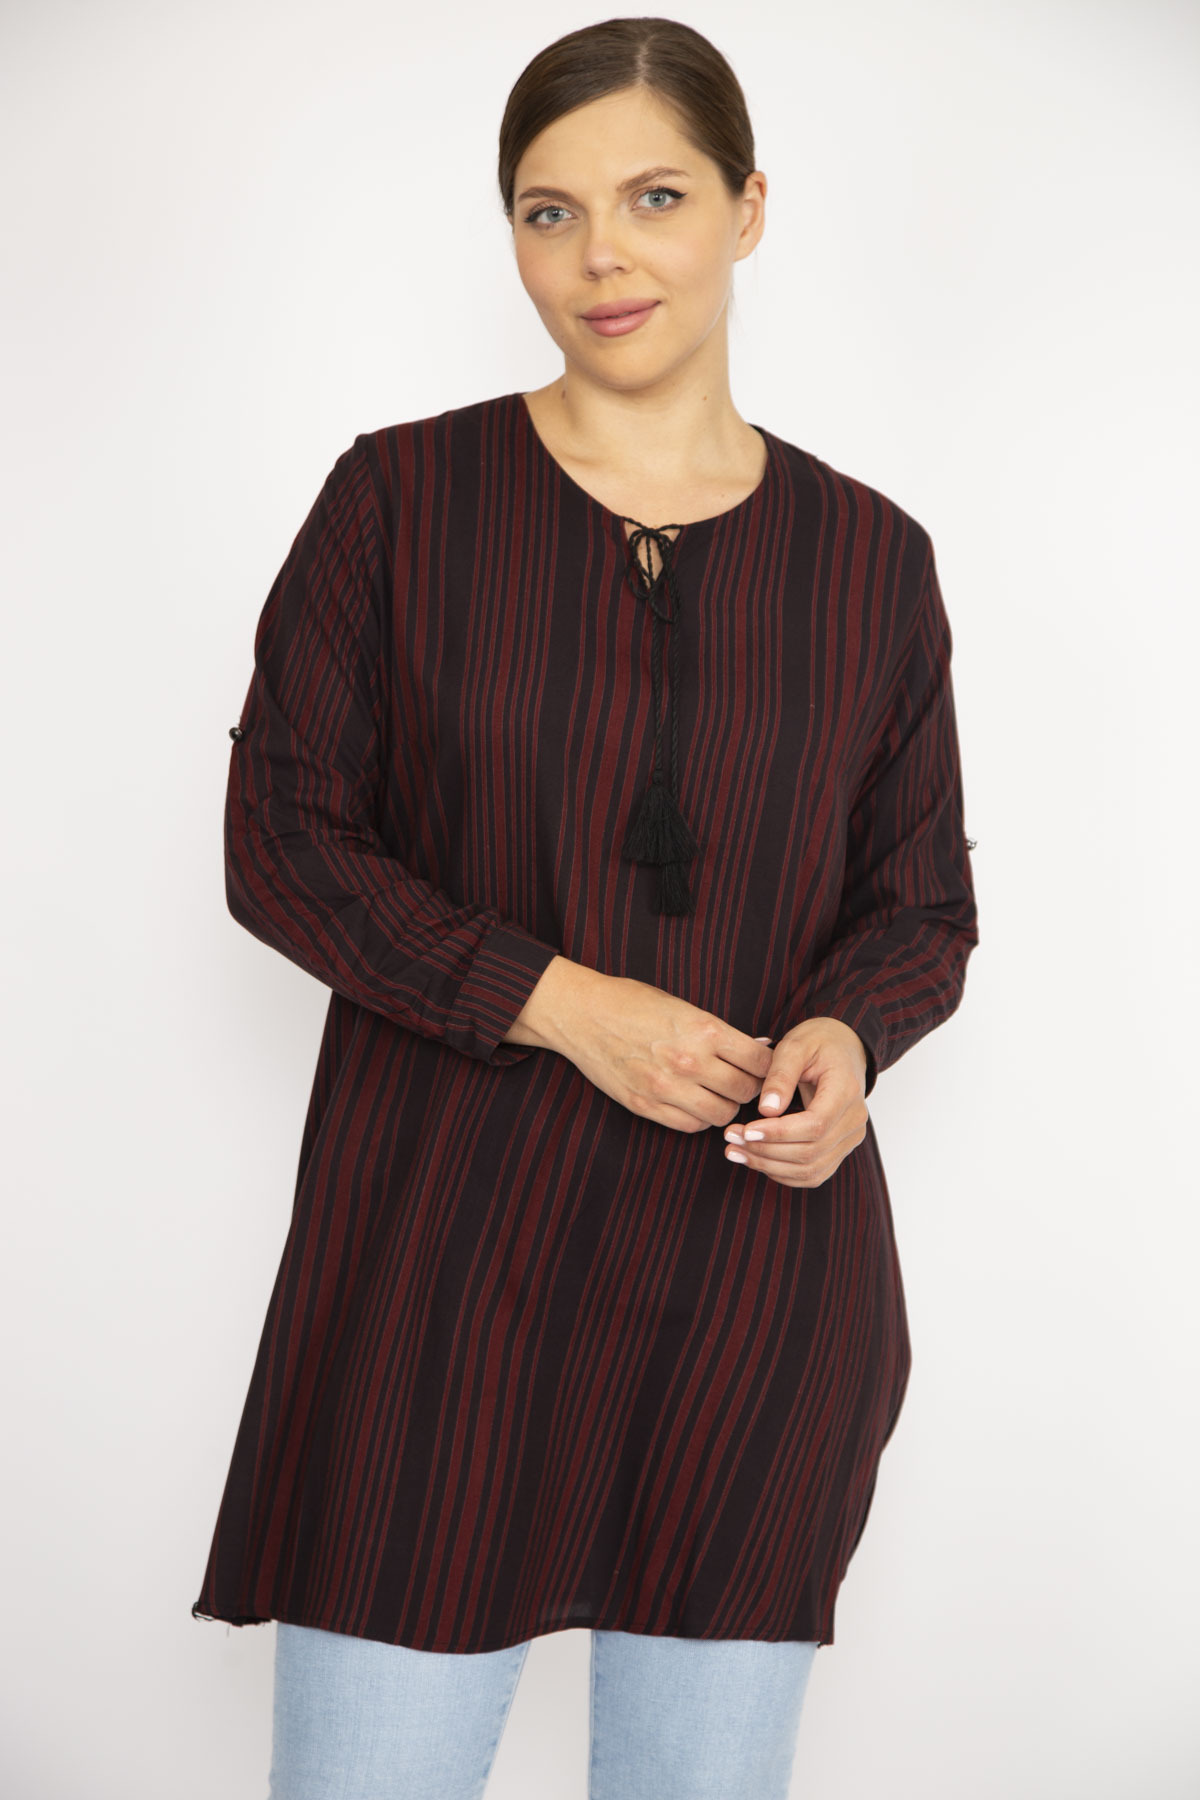 Levně Şans Women's Plus Size Burgundy V Neck Tunic with Adjustable Sleeve Length